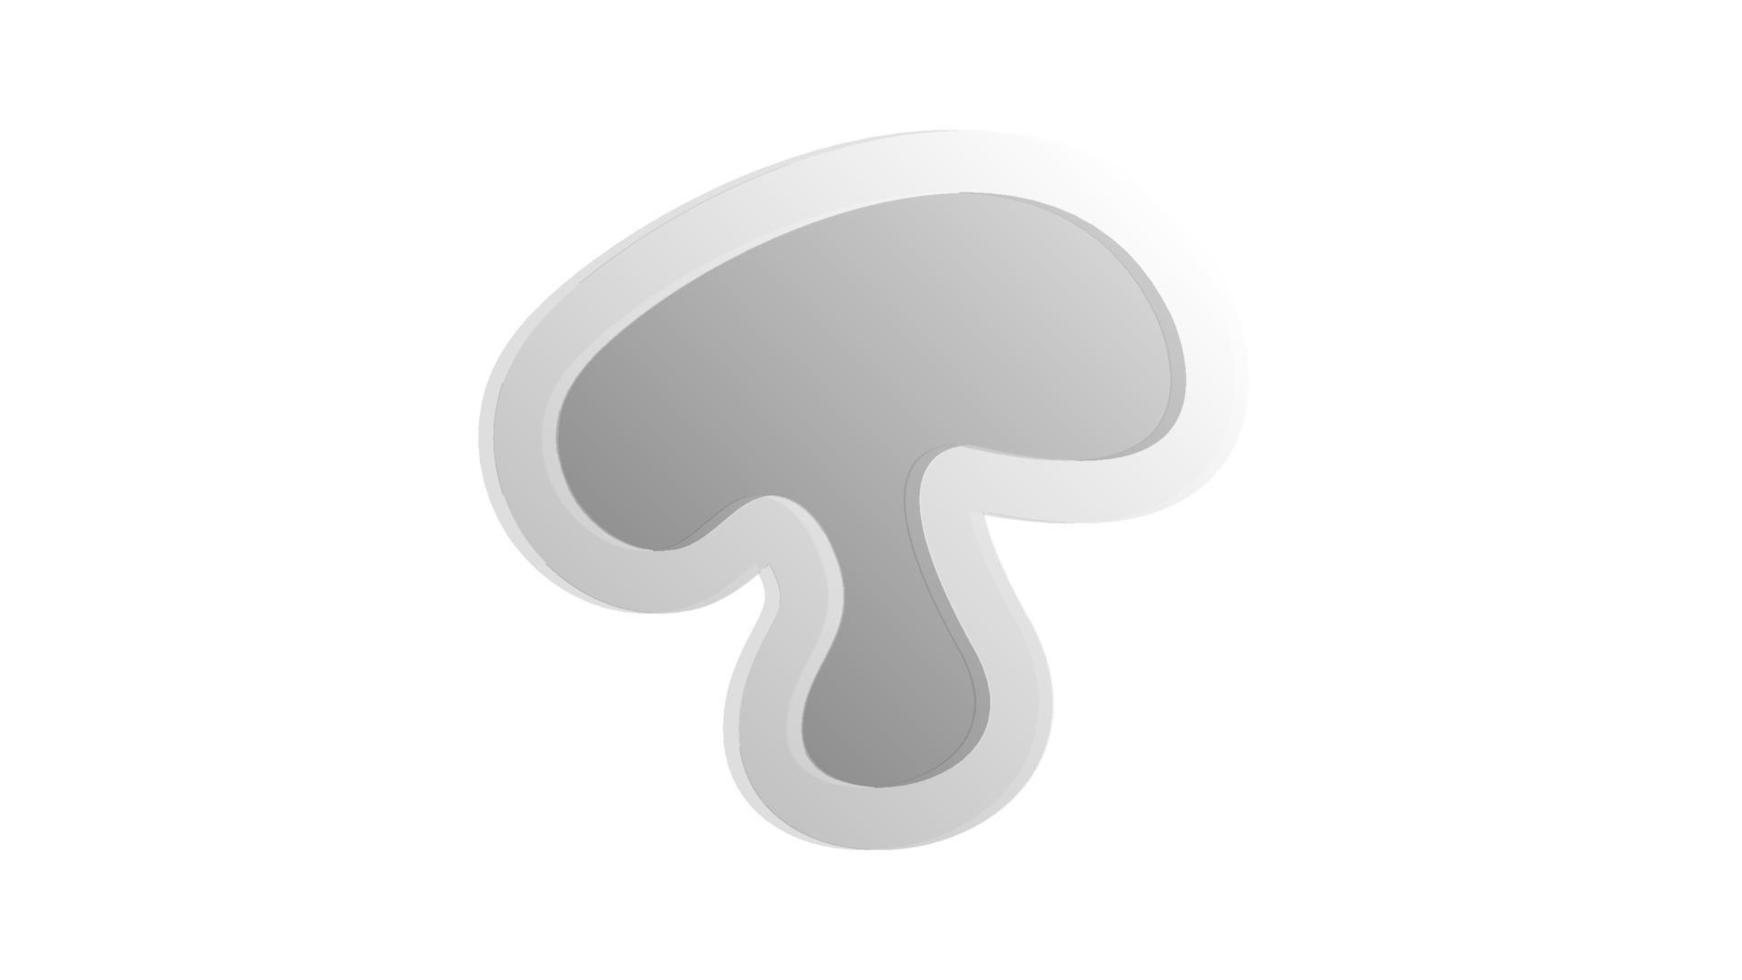 champignons Aan een wit achtergrond, vector illustratie. een stuk van champignon in een snee. champignons met een wit-grijs kap. champignons met een volumetrisch contour. blanco voor pizza